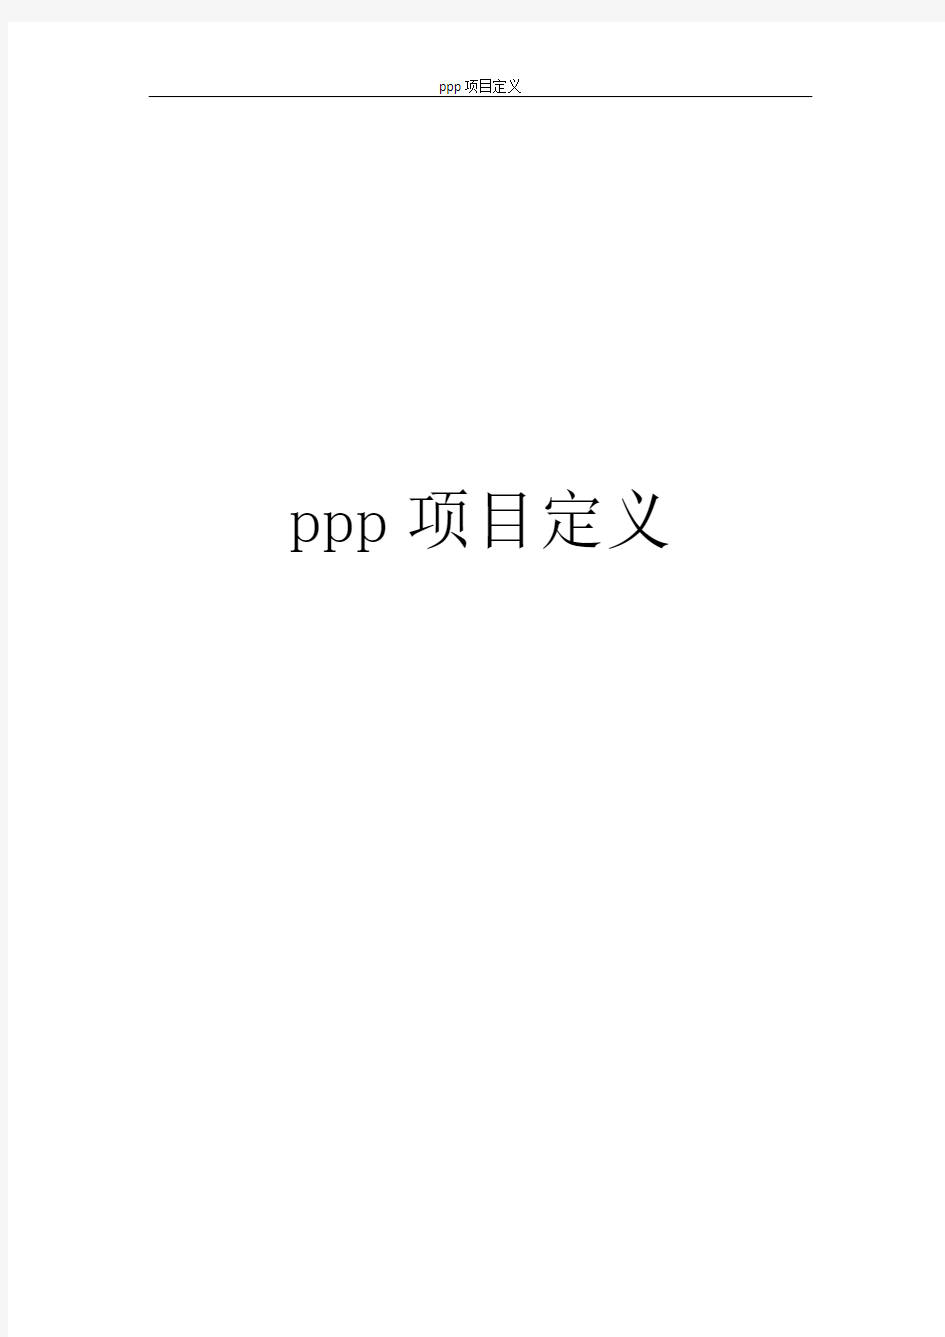 ppp项目定义